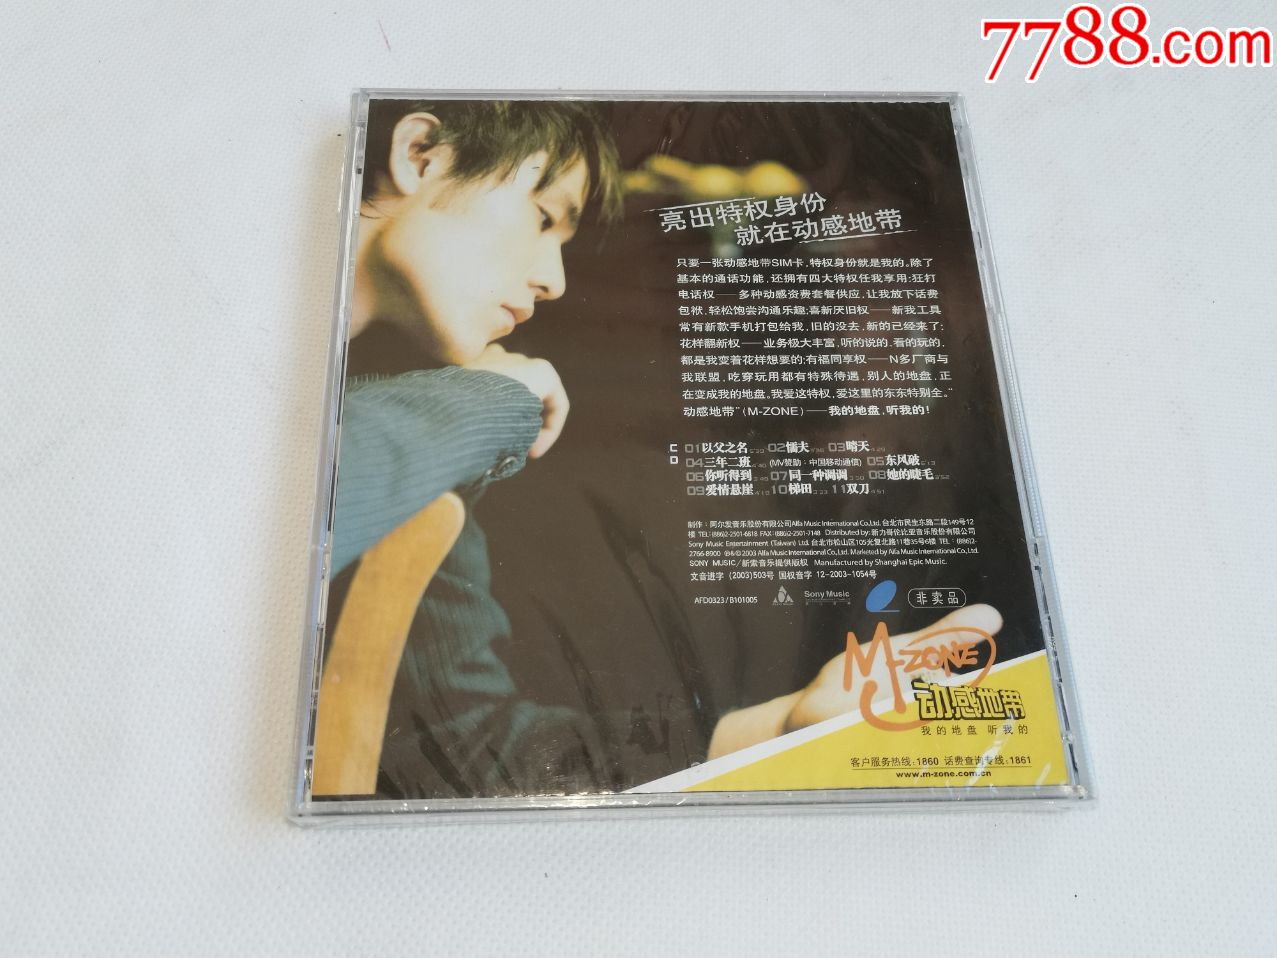 周杰伦专辑《叶惠美》上海声像正版cd动感地带版,全新